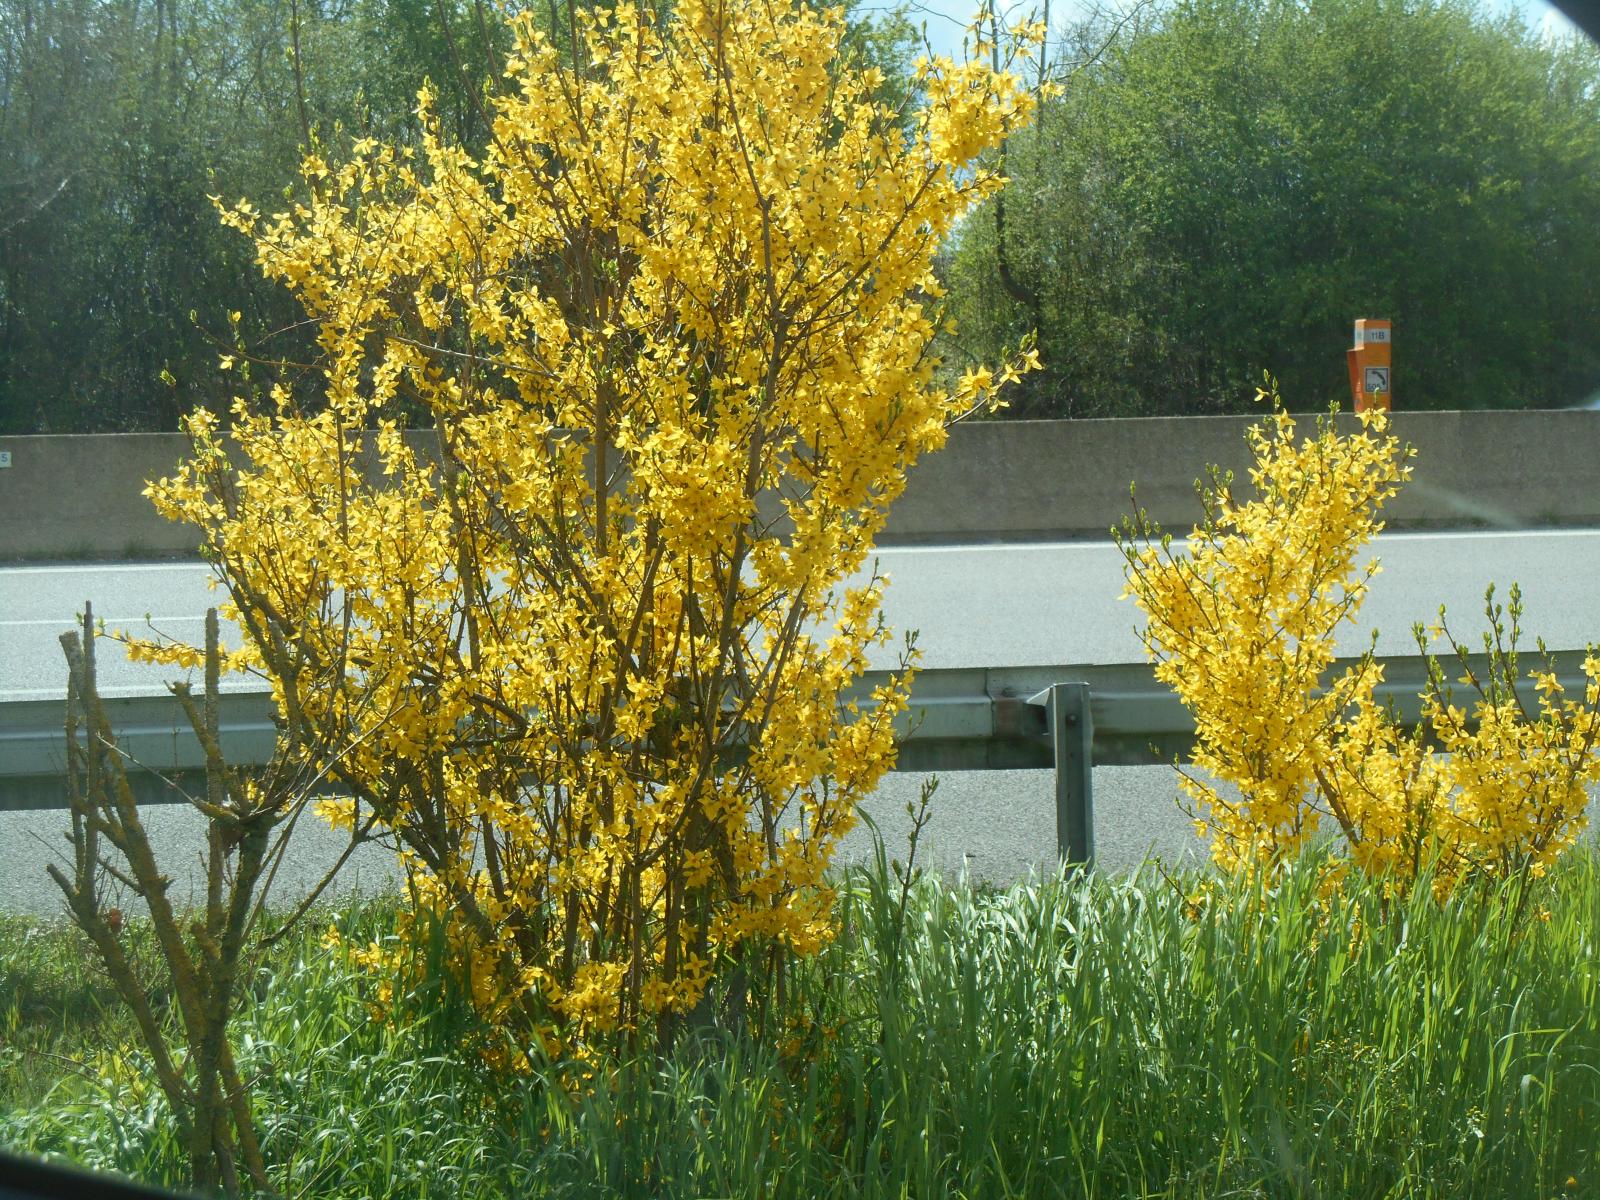 Fleurs dorés au bord de la A11 ( Autoroute )